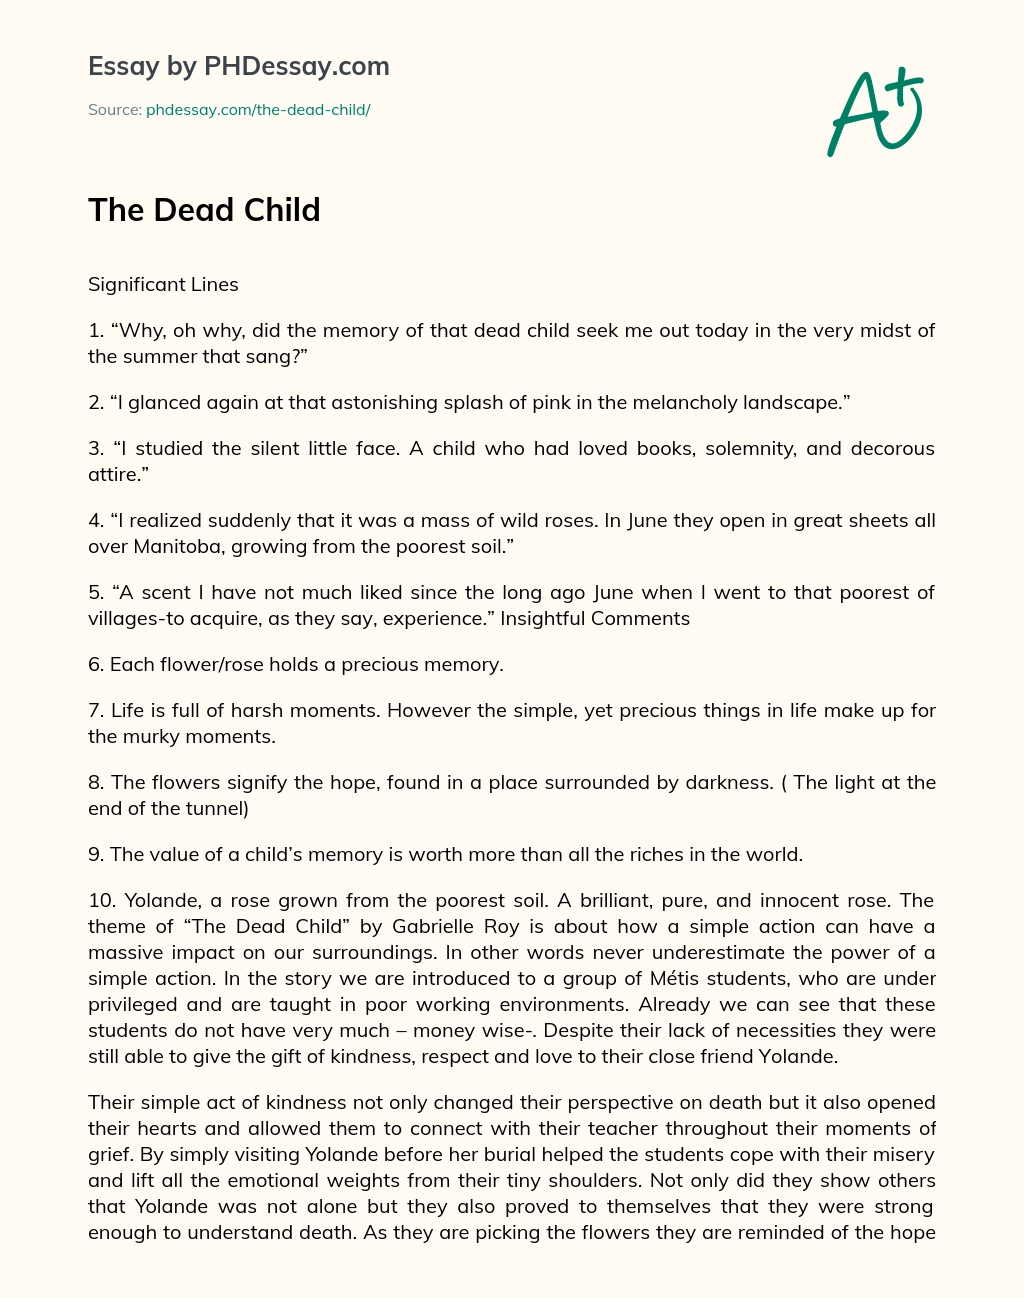 The Dead Child essay